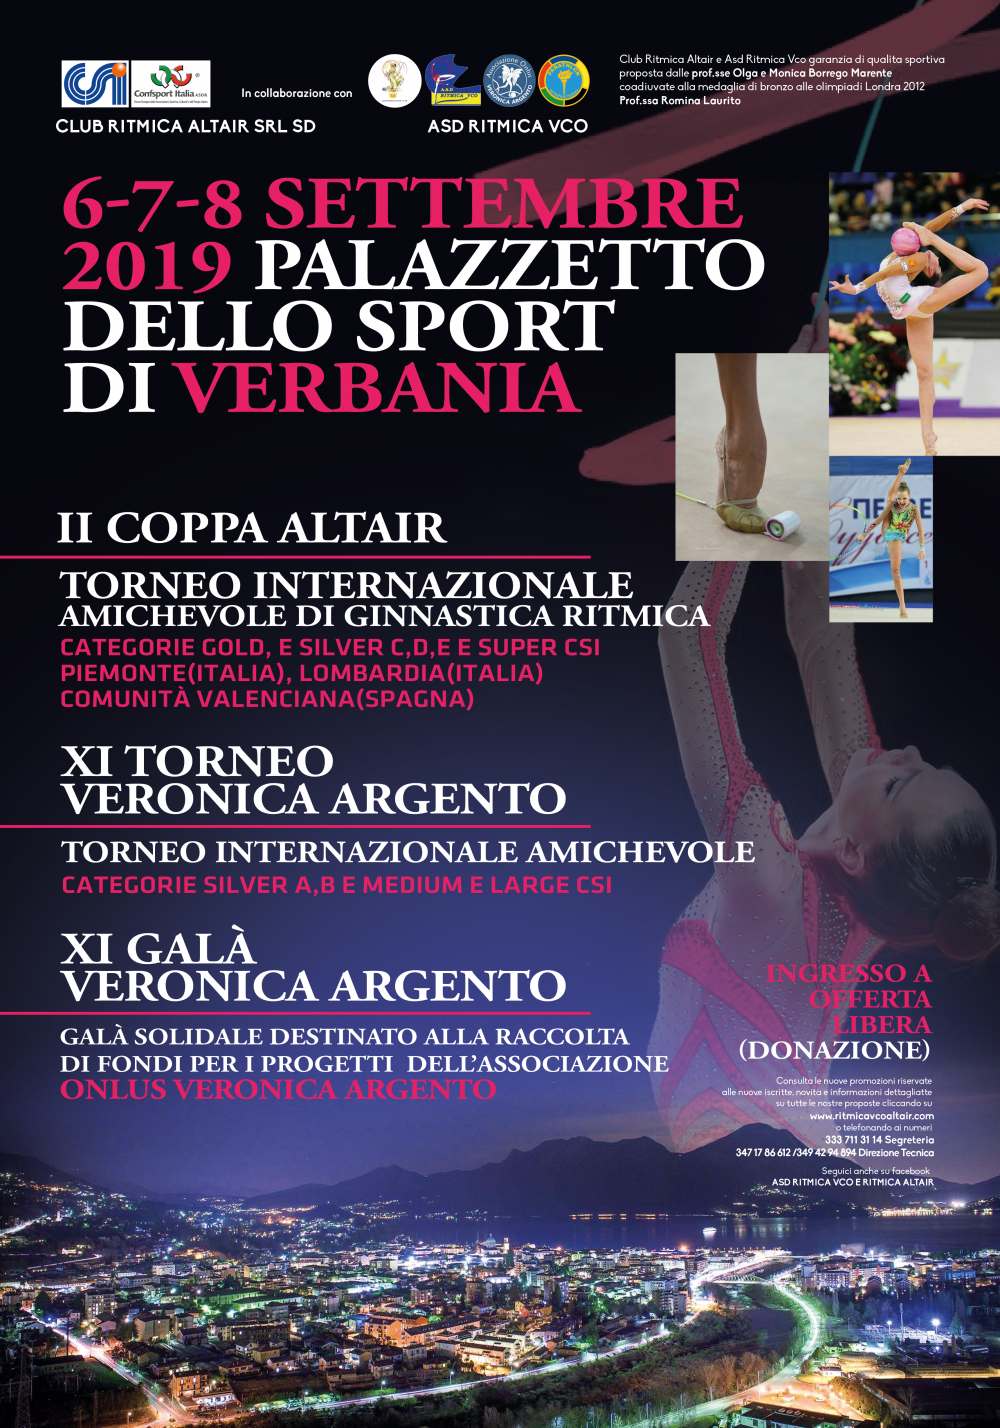 Programma tecnico 3 Coppa Altair /XIITorneo Veronica Argento 2020 - Ritmica VCO - Club Altair